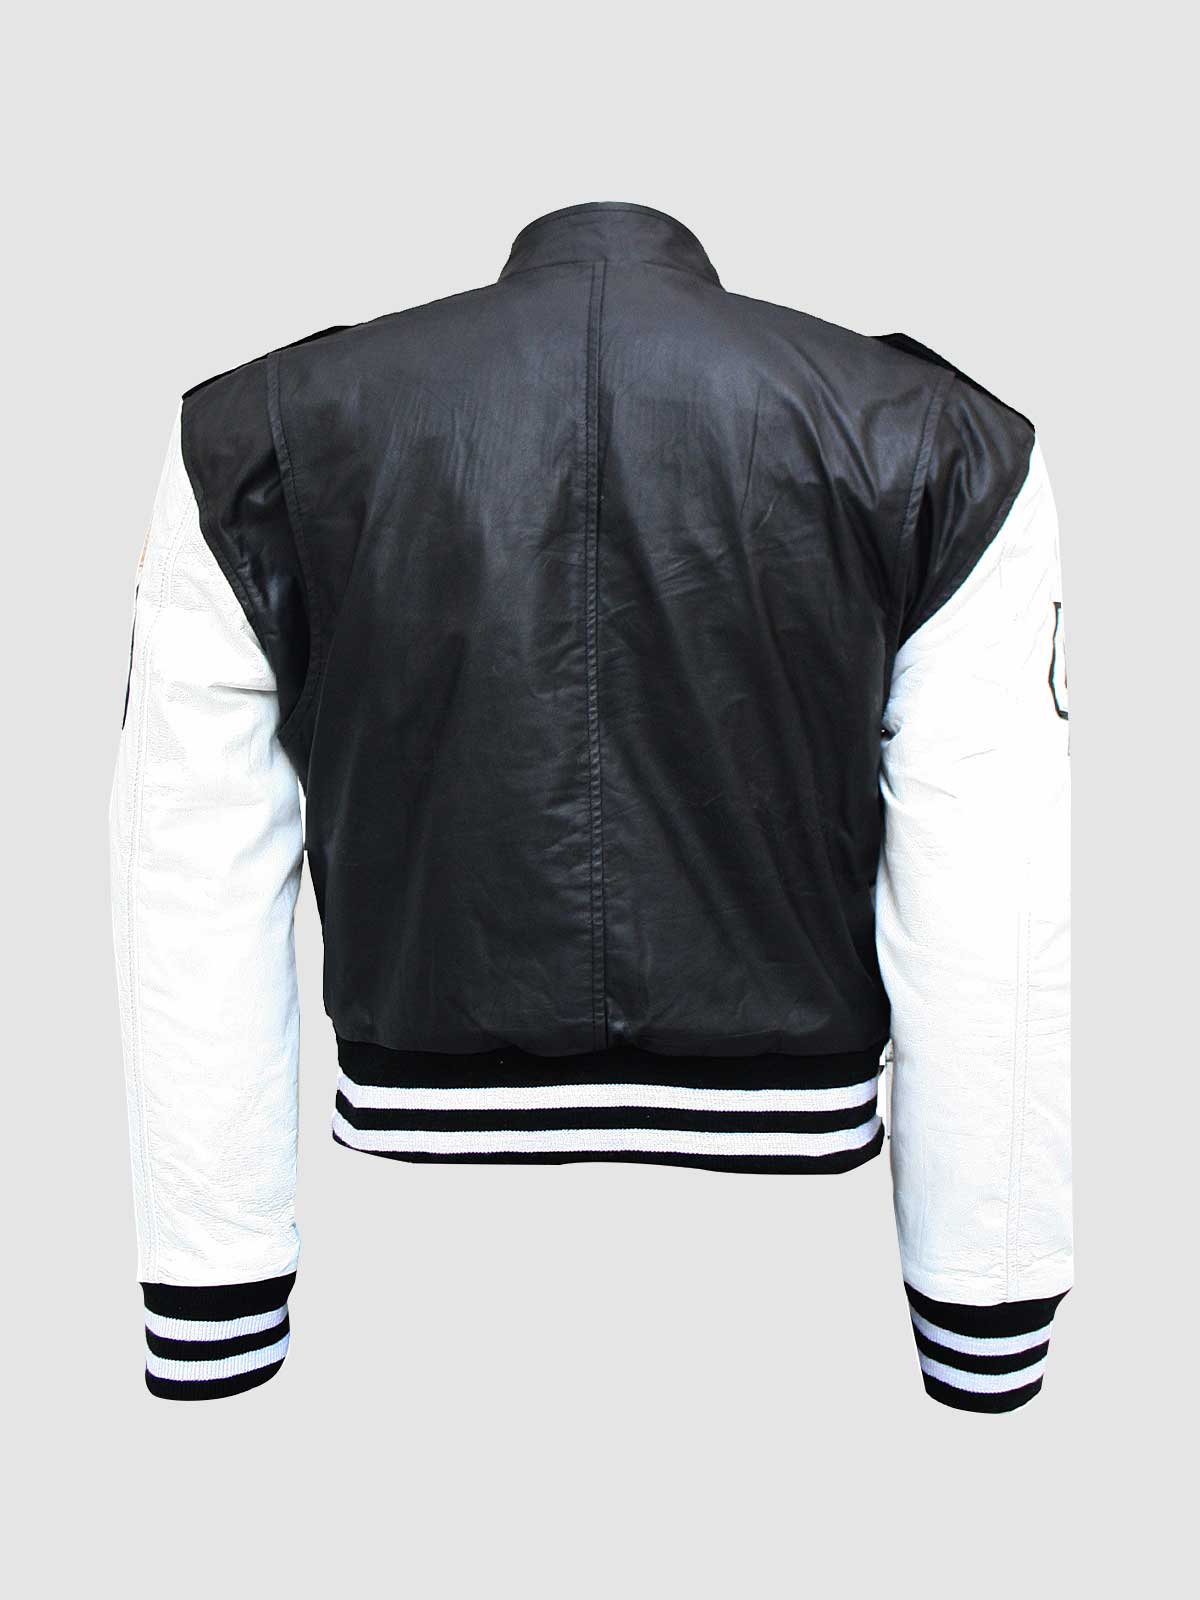 Mens Unique Black and White Leather Varsity Jacket | Leather Jacket Master